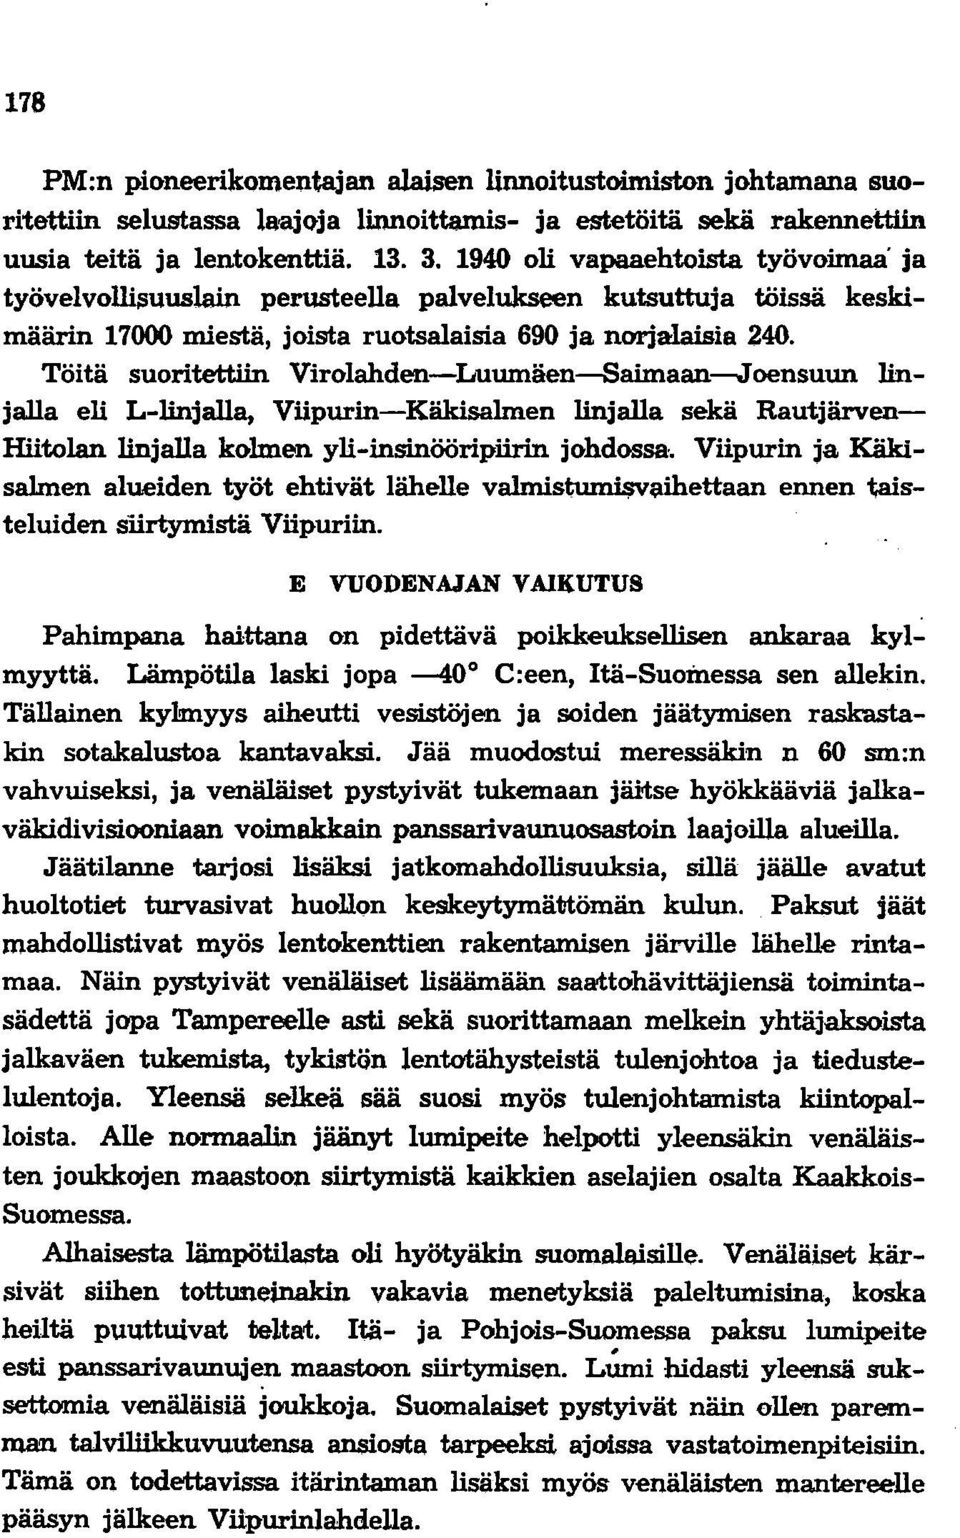 Töitä suoritettiin Virolahden-Luumäen-8aimaan-Joensuun linjalla eli L-linjalla, Viipurin-Käkisalmen linjalla sekä Rautjärven Riitolan linjalla kolmen yli-insinööripiirin johdossa.